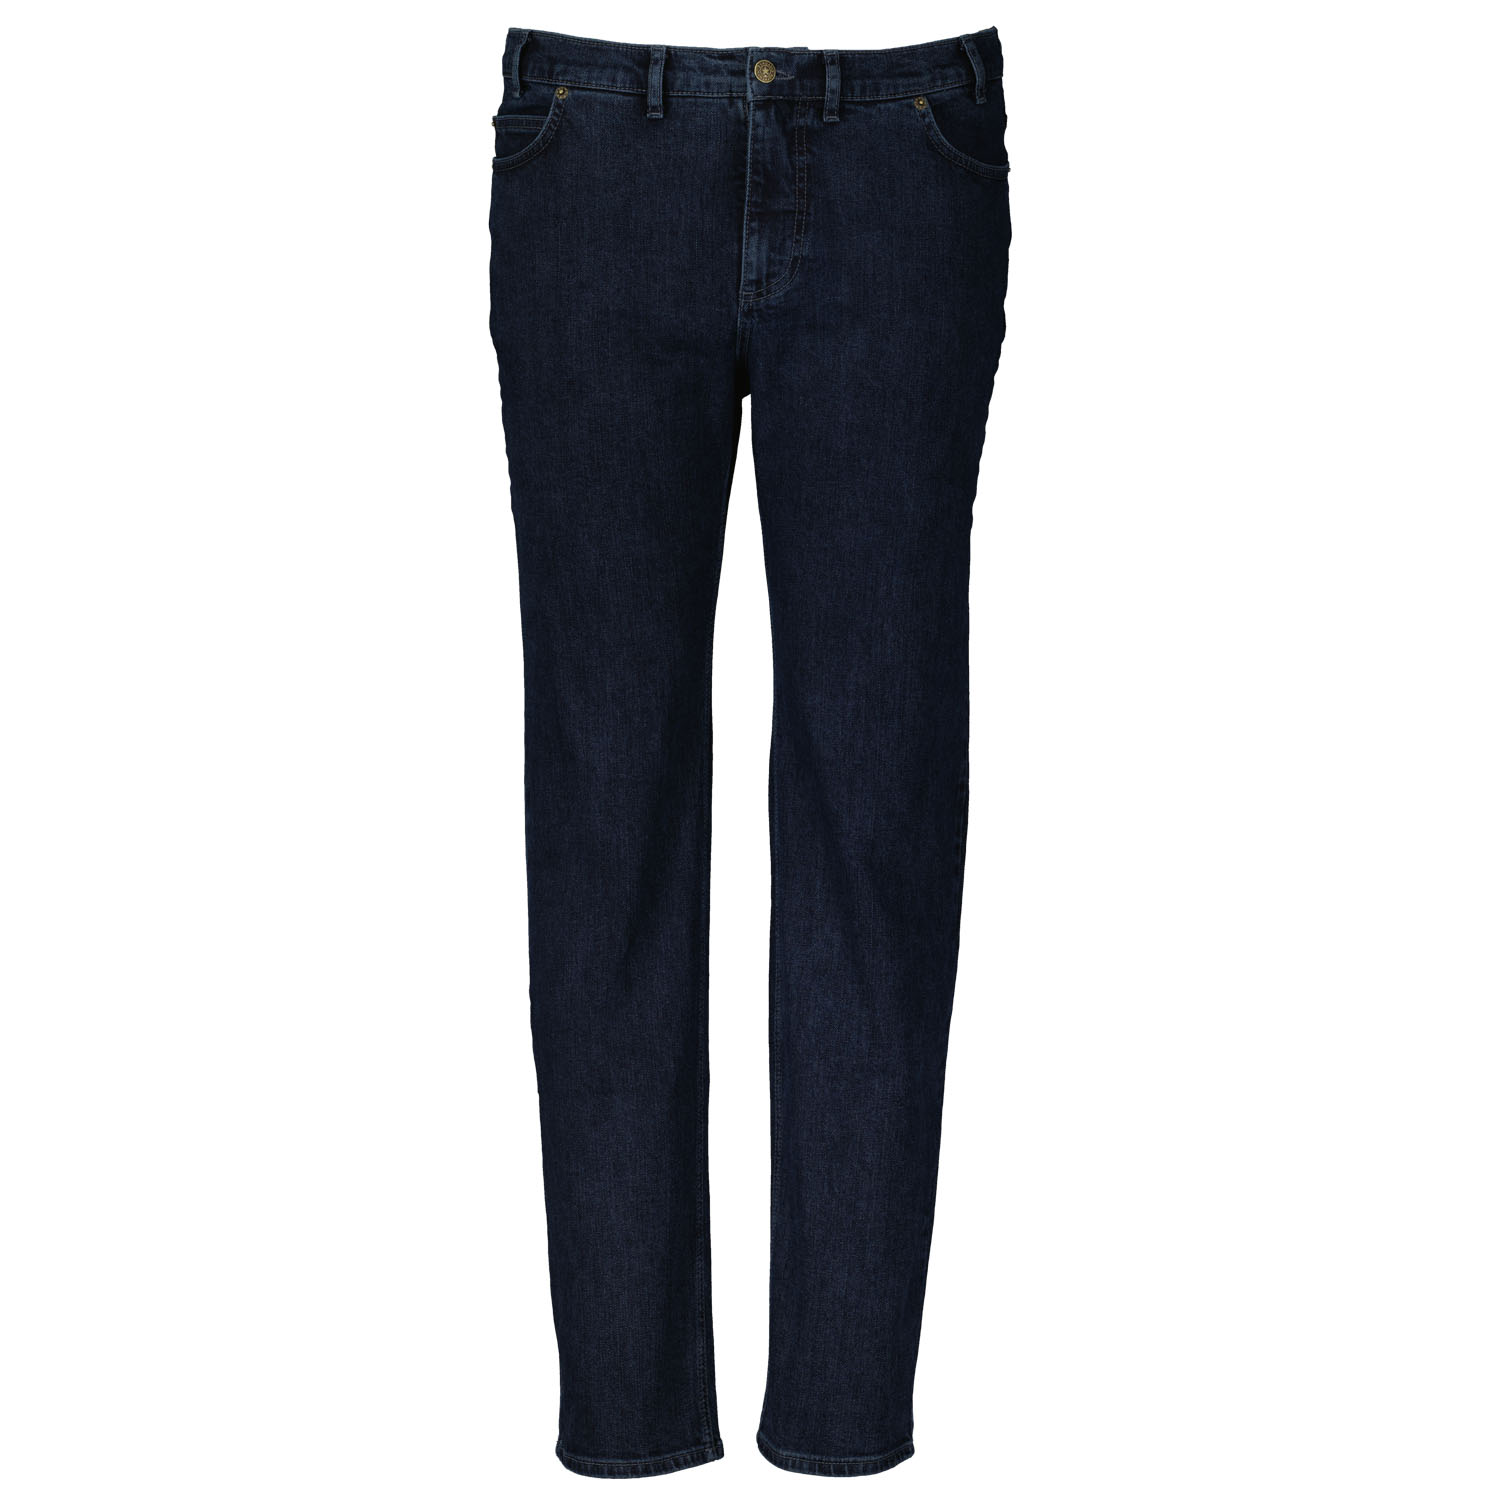 Herren 5-Pocket Jeans lang in dark navy mit Stretch von Adamo Serie COLORADO in Übergrößen 28 - 40